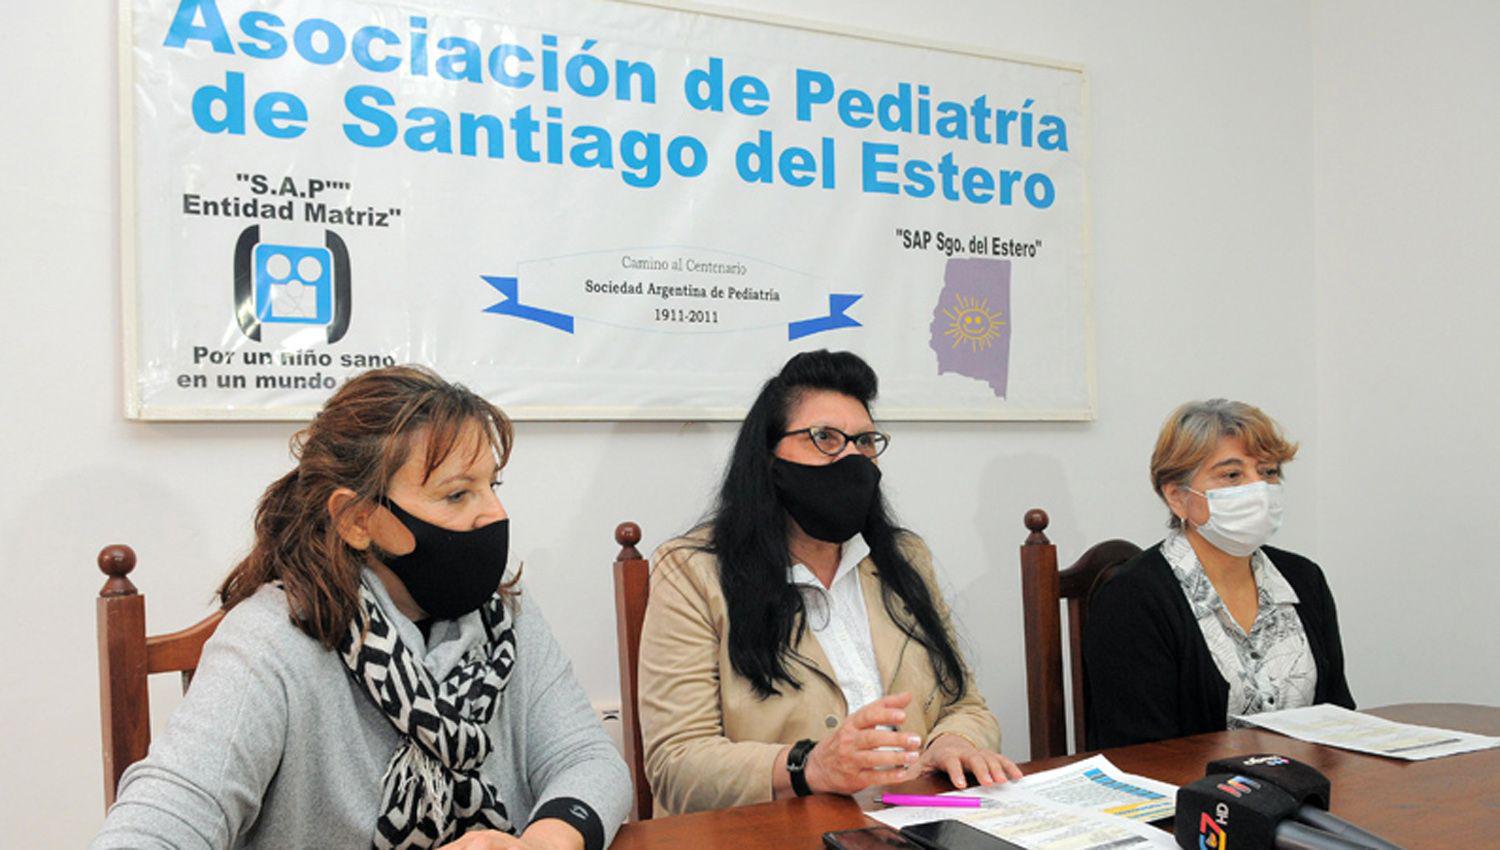 Miembros de la Asociación de Pediatría informaron sobre la realización de la capacitación